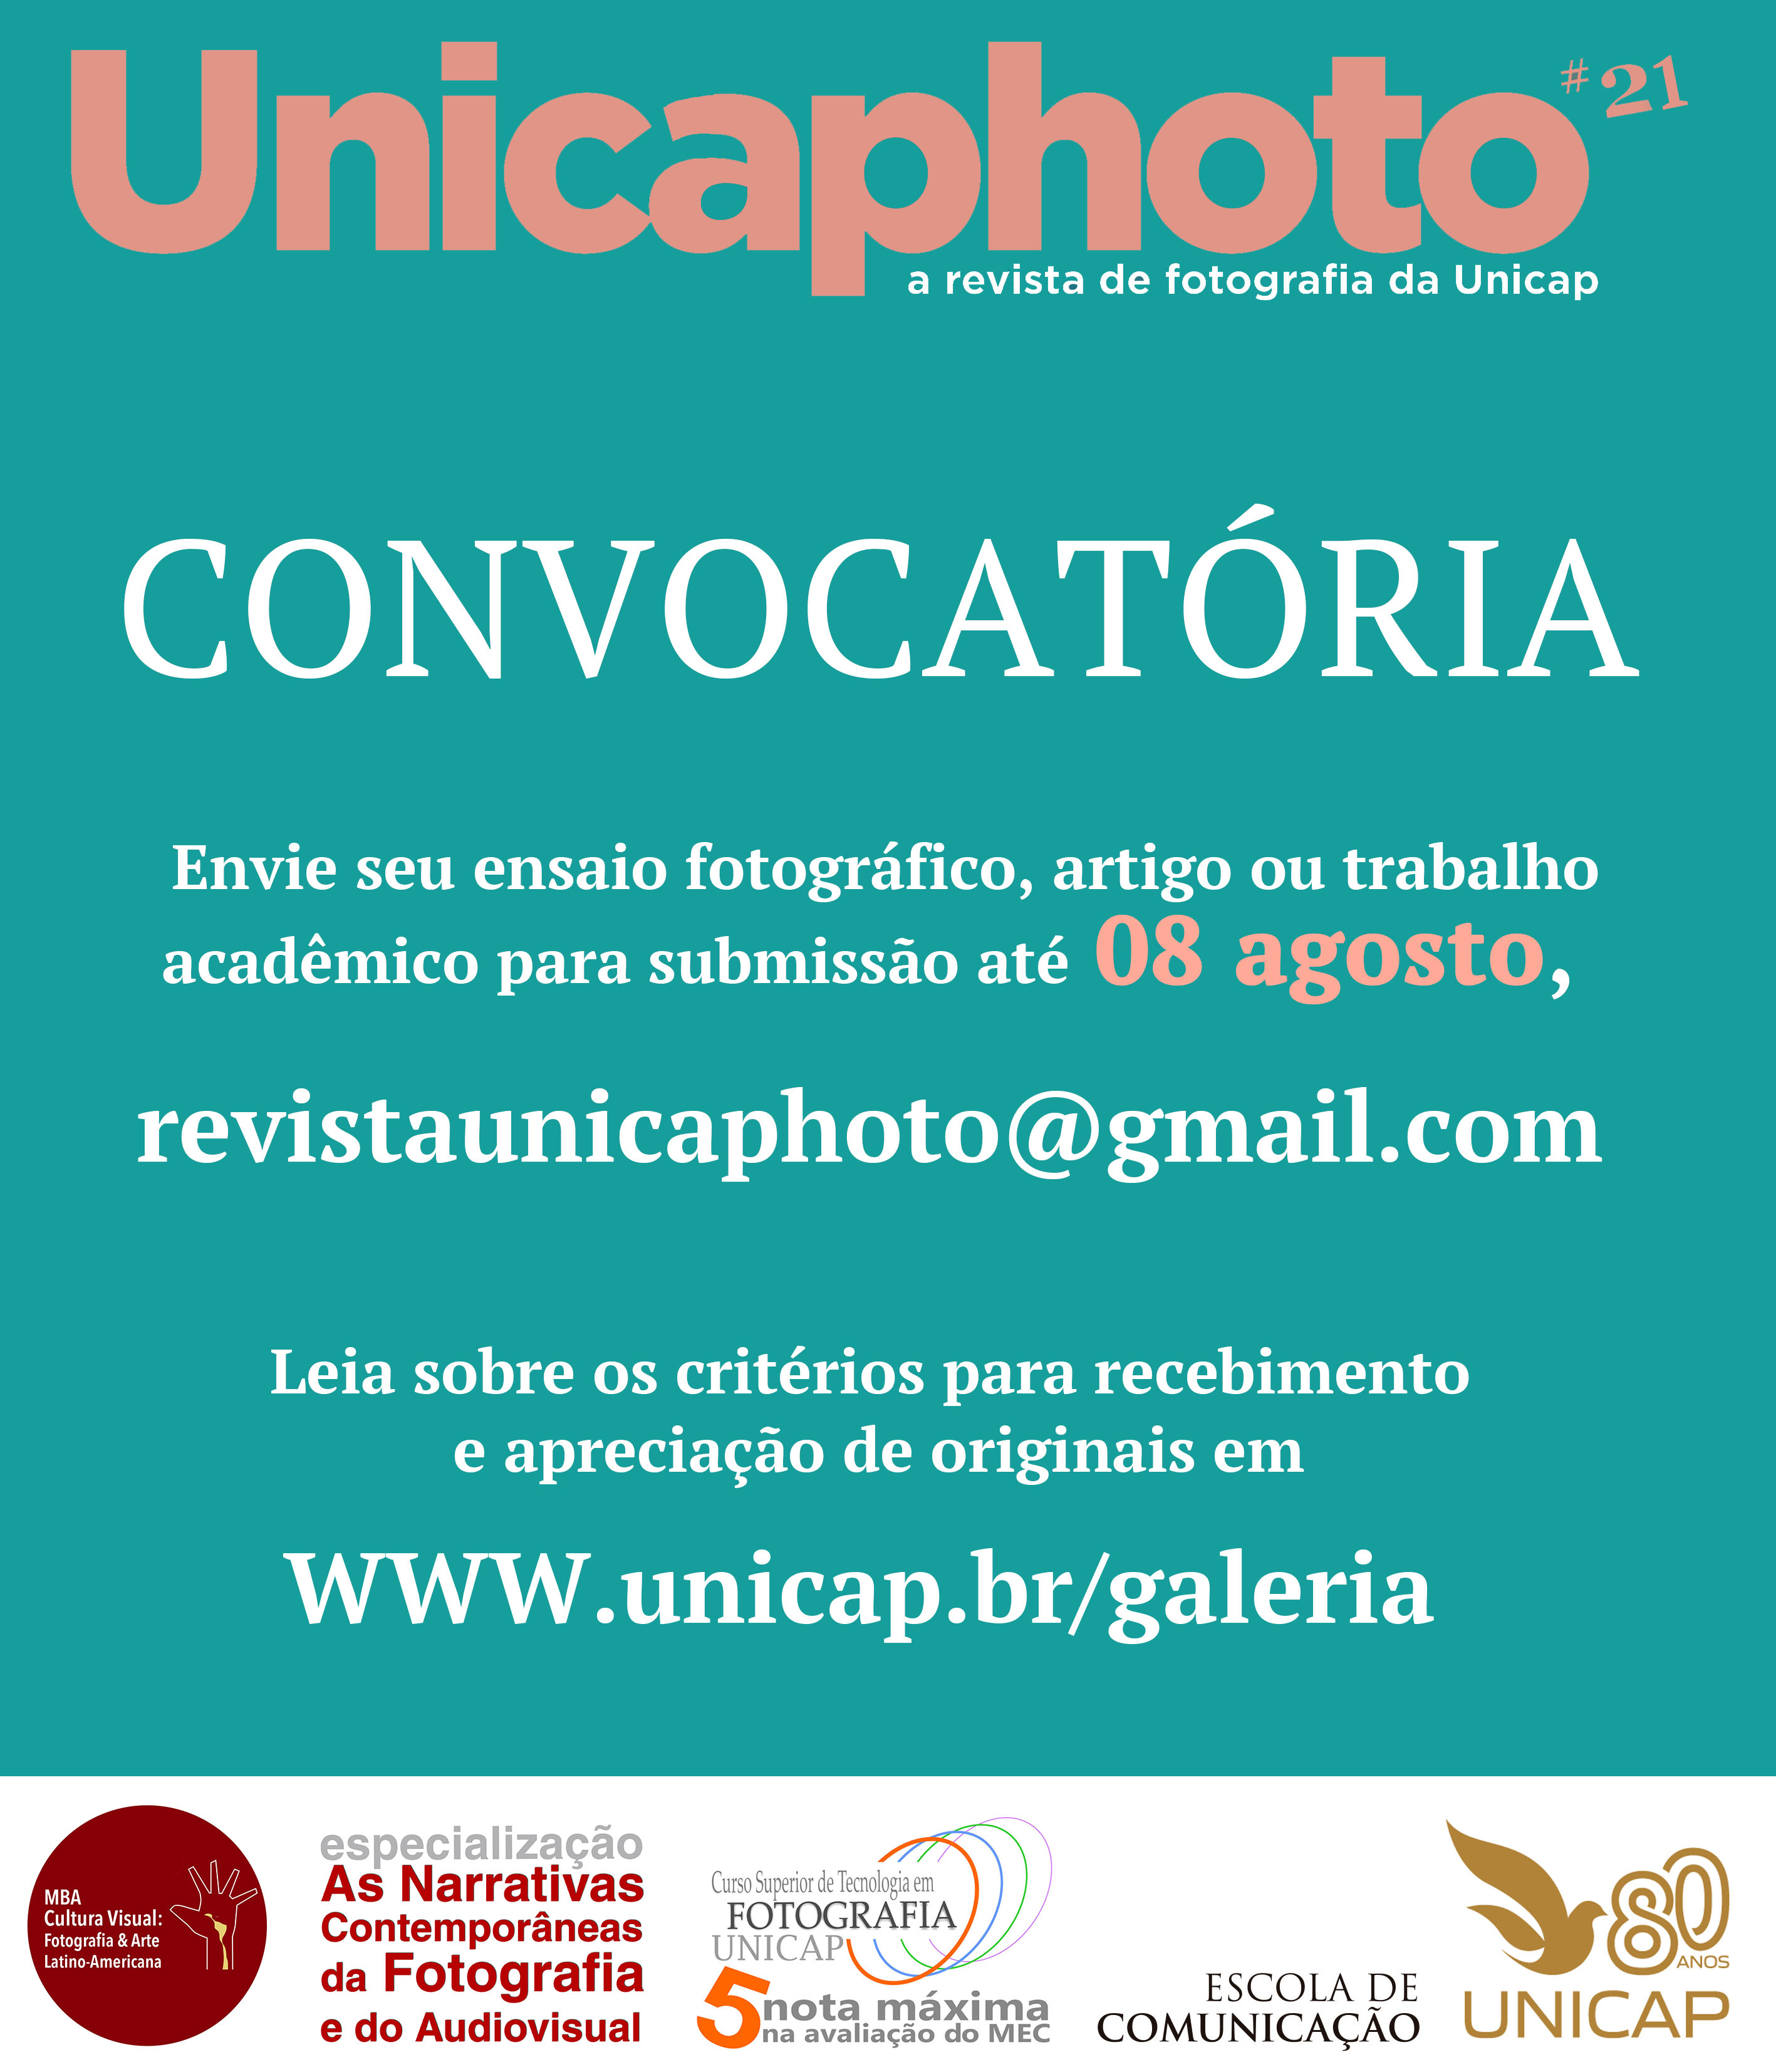 UNICAPHOTO 21 FINAL convocato´ria copiar (1).jpg